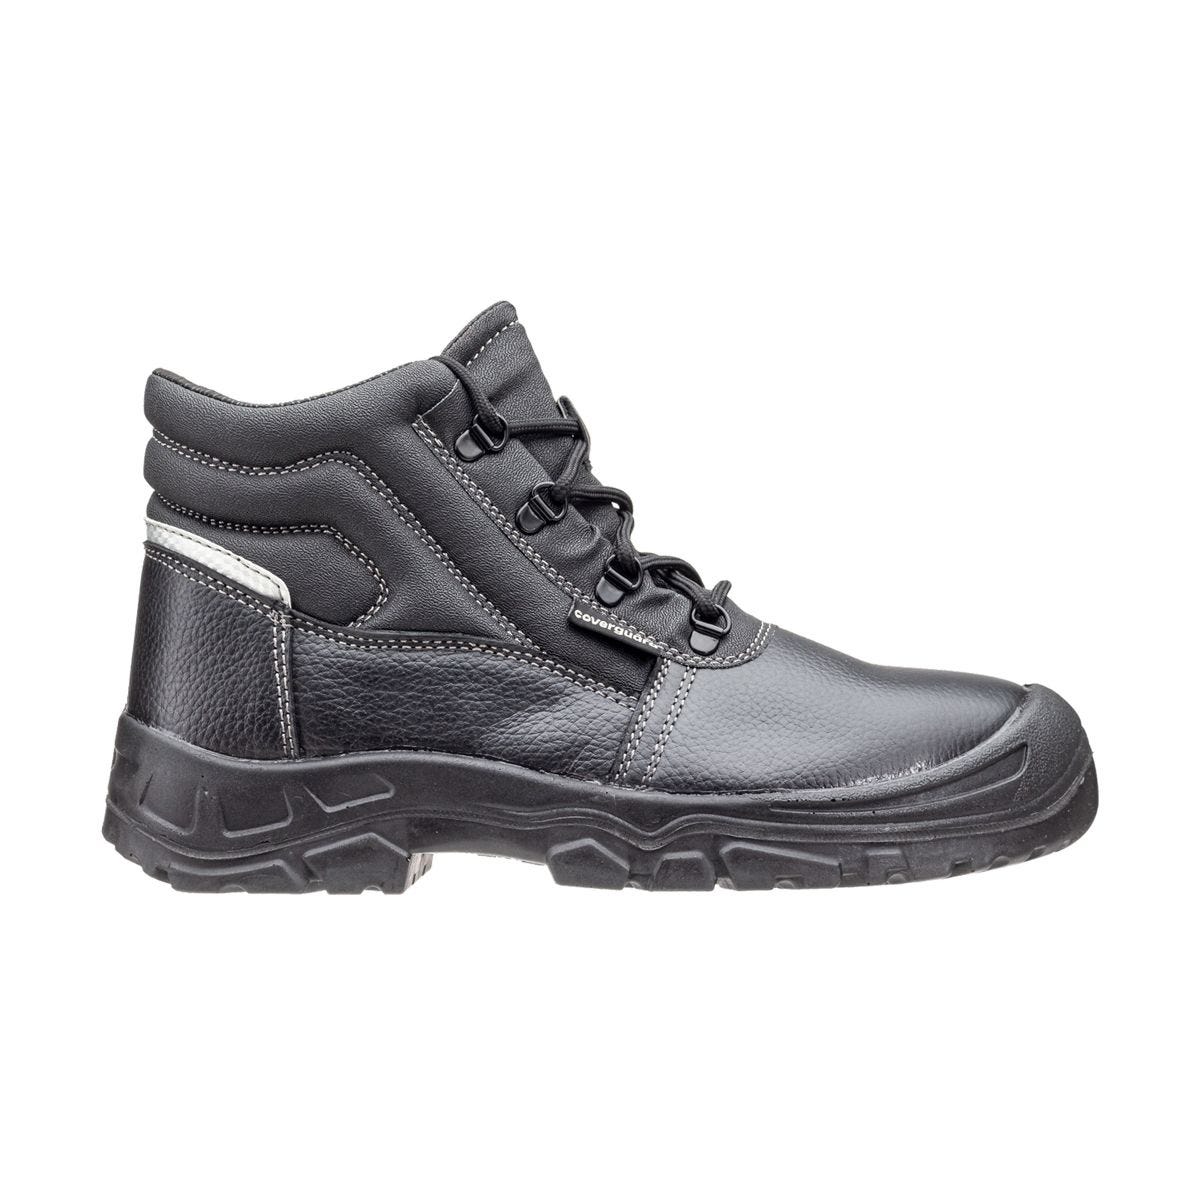 Chaussures de sécurité hautes Azurite II S3 ESD noir - Coverguard - Taille 39 1